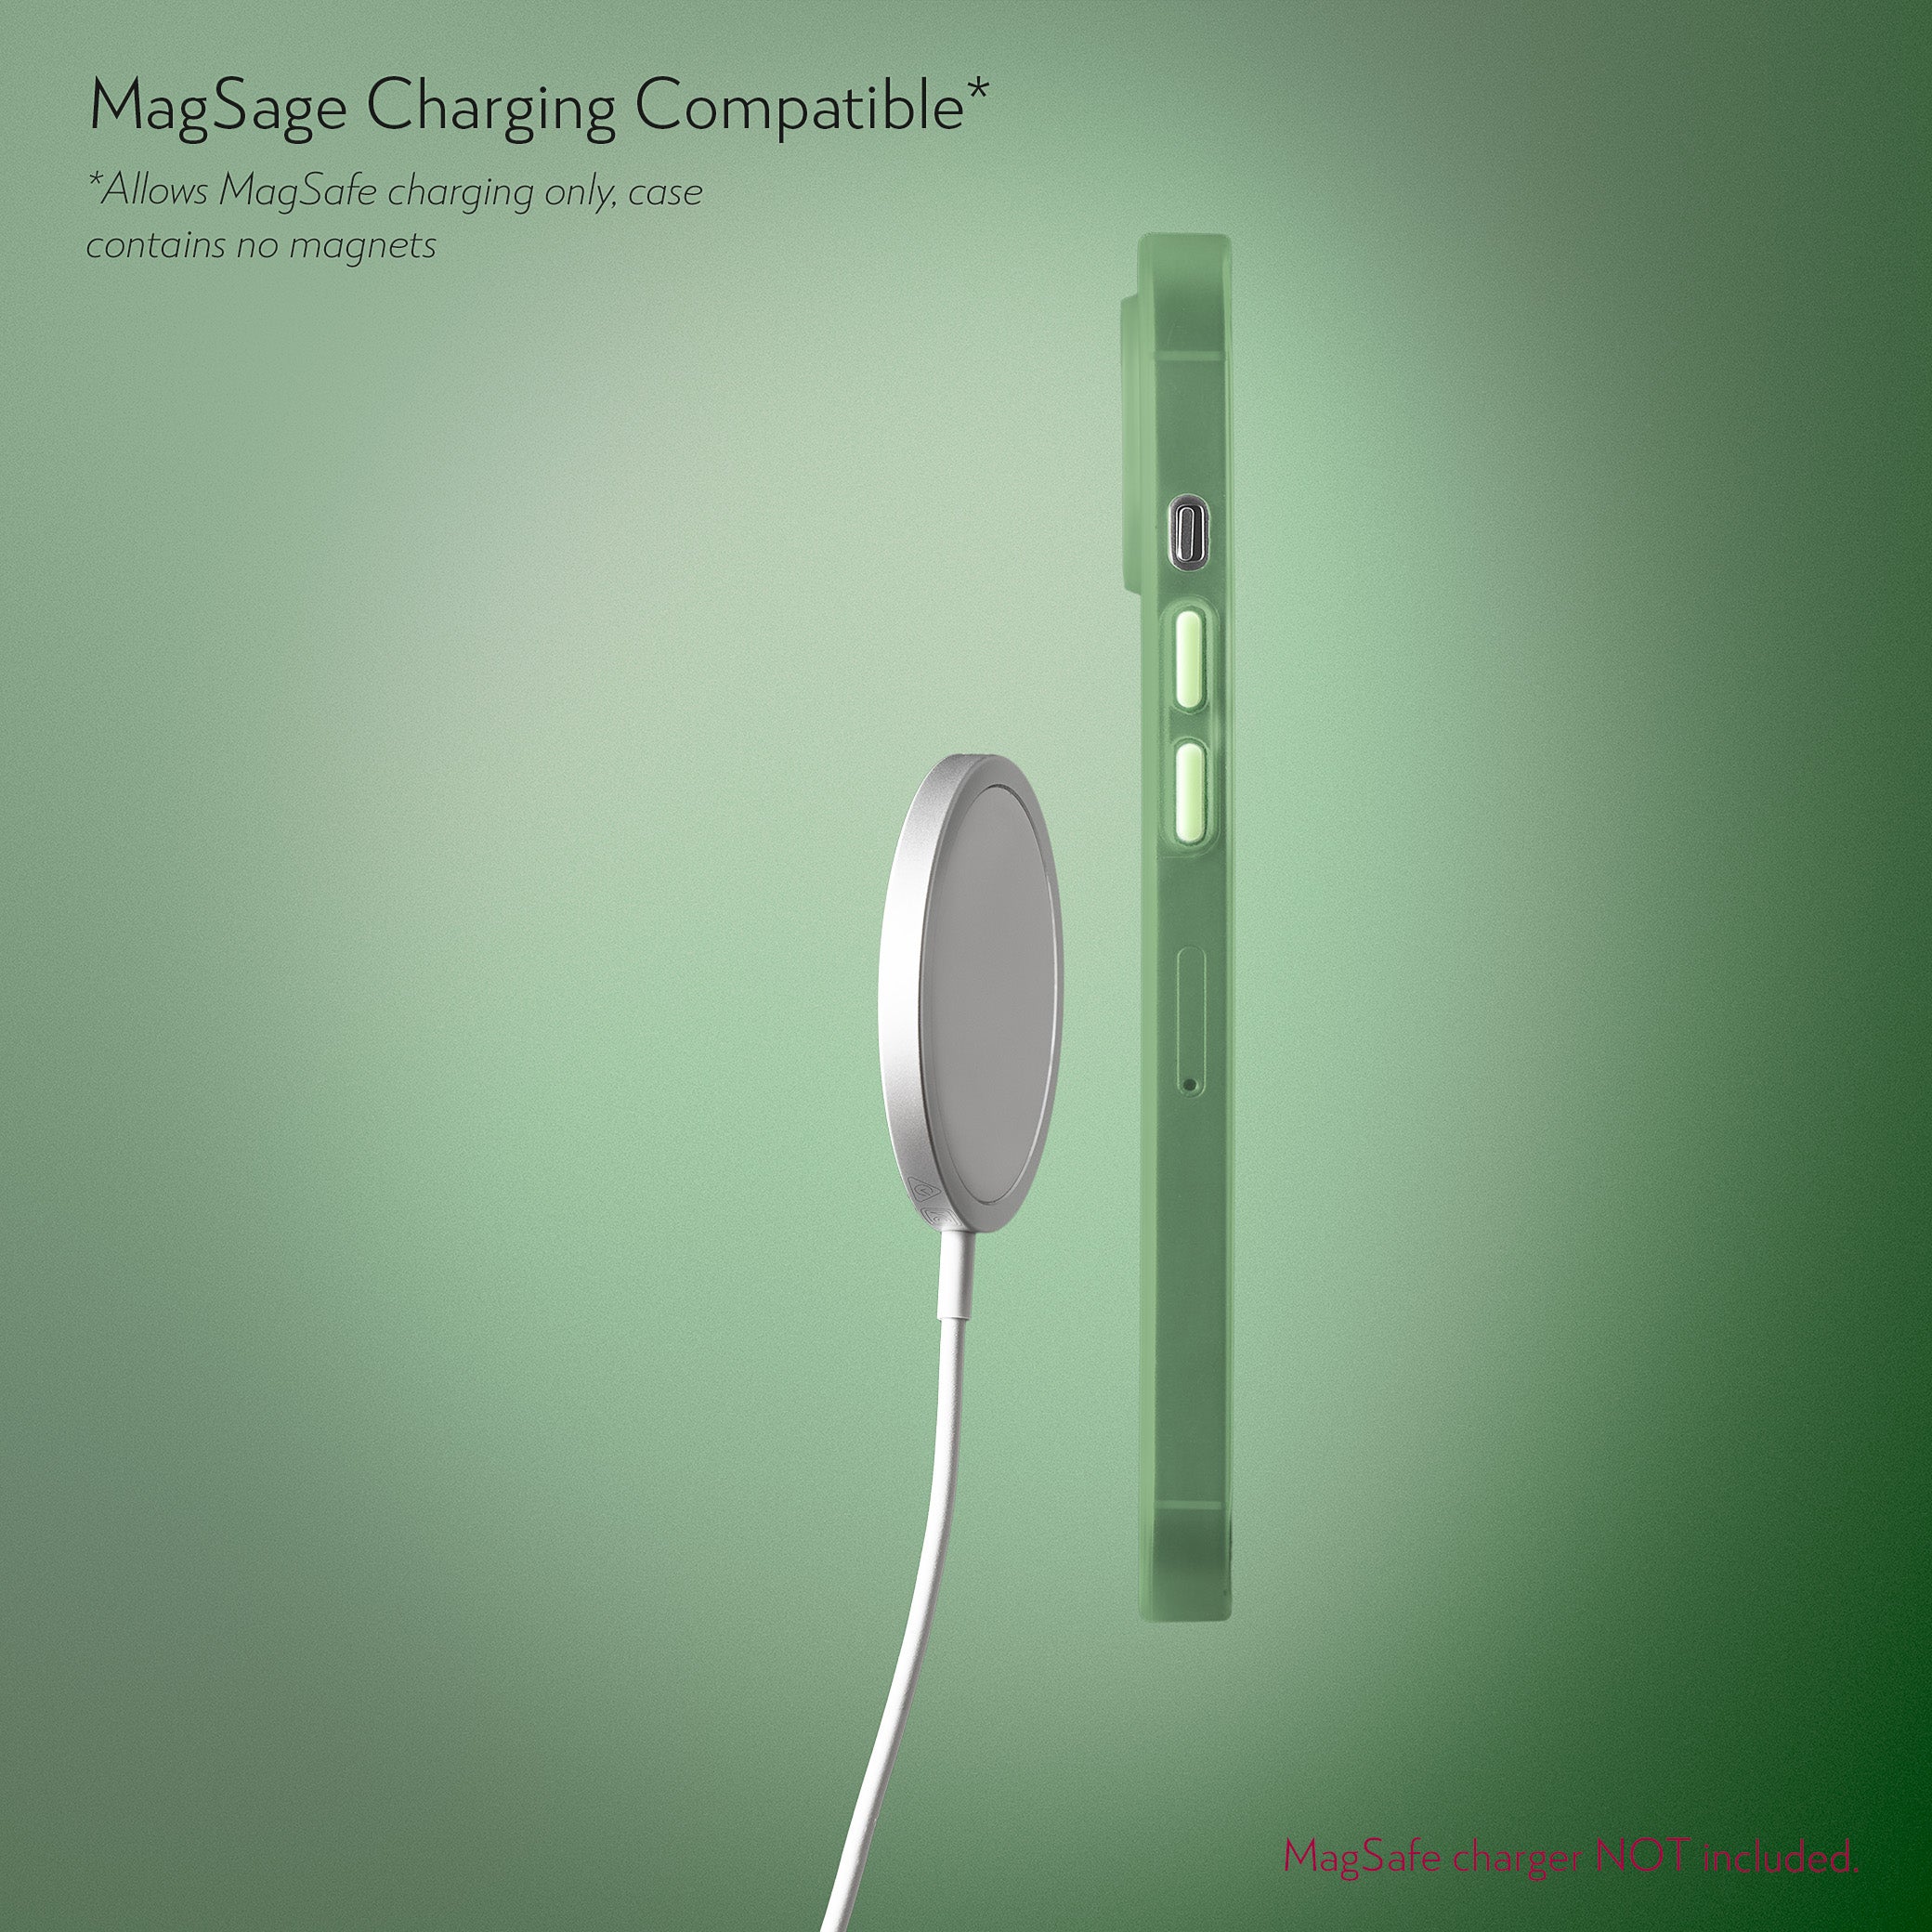 Super Slim Case 2.0 for iPhone 12 Mini - Avacado Green